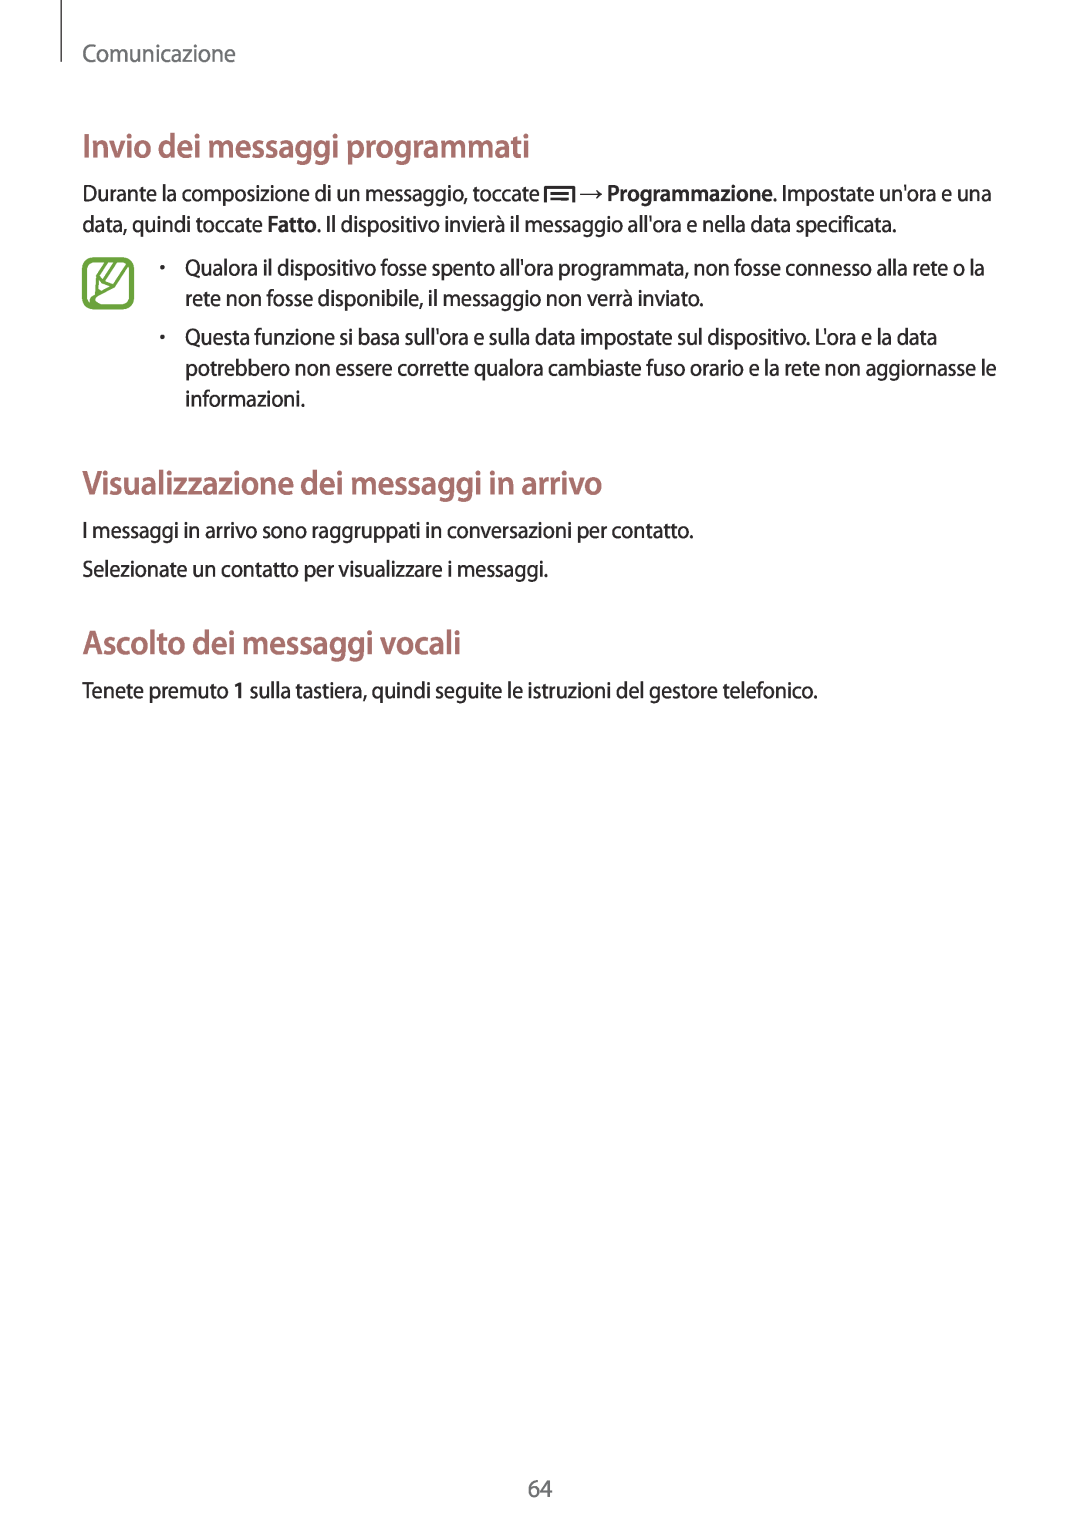 Samsung GT-N7100RWDTIM Invio dei messaggi programmati, Visualizzazione dei messaggi in arrivo, Ascolto dei messaggi vocali 